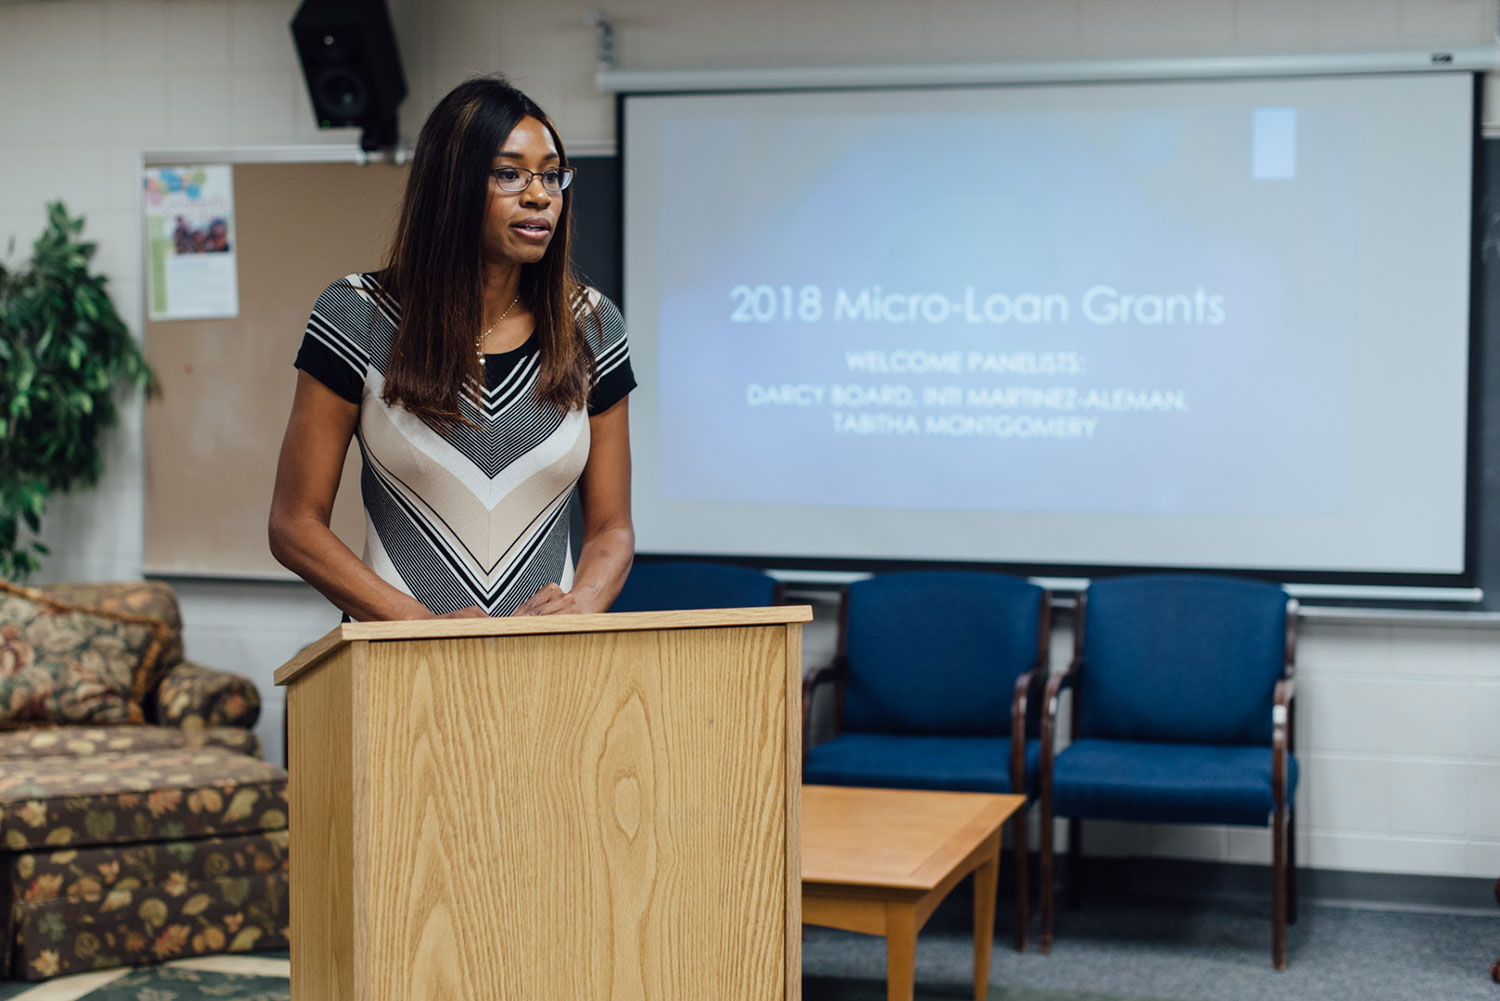 MicroLoan grant presenter